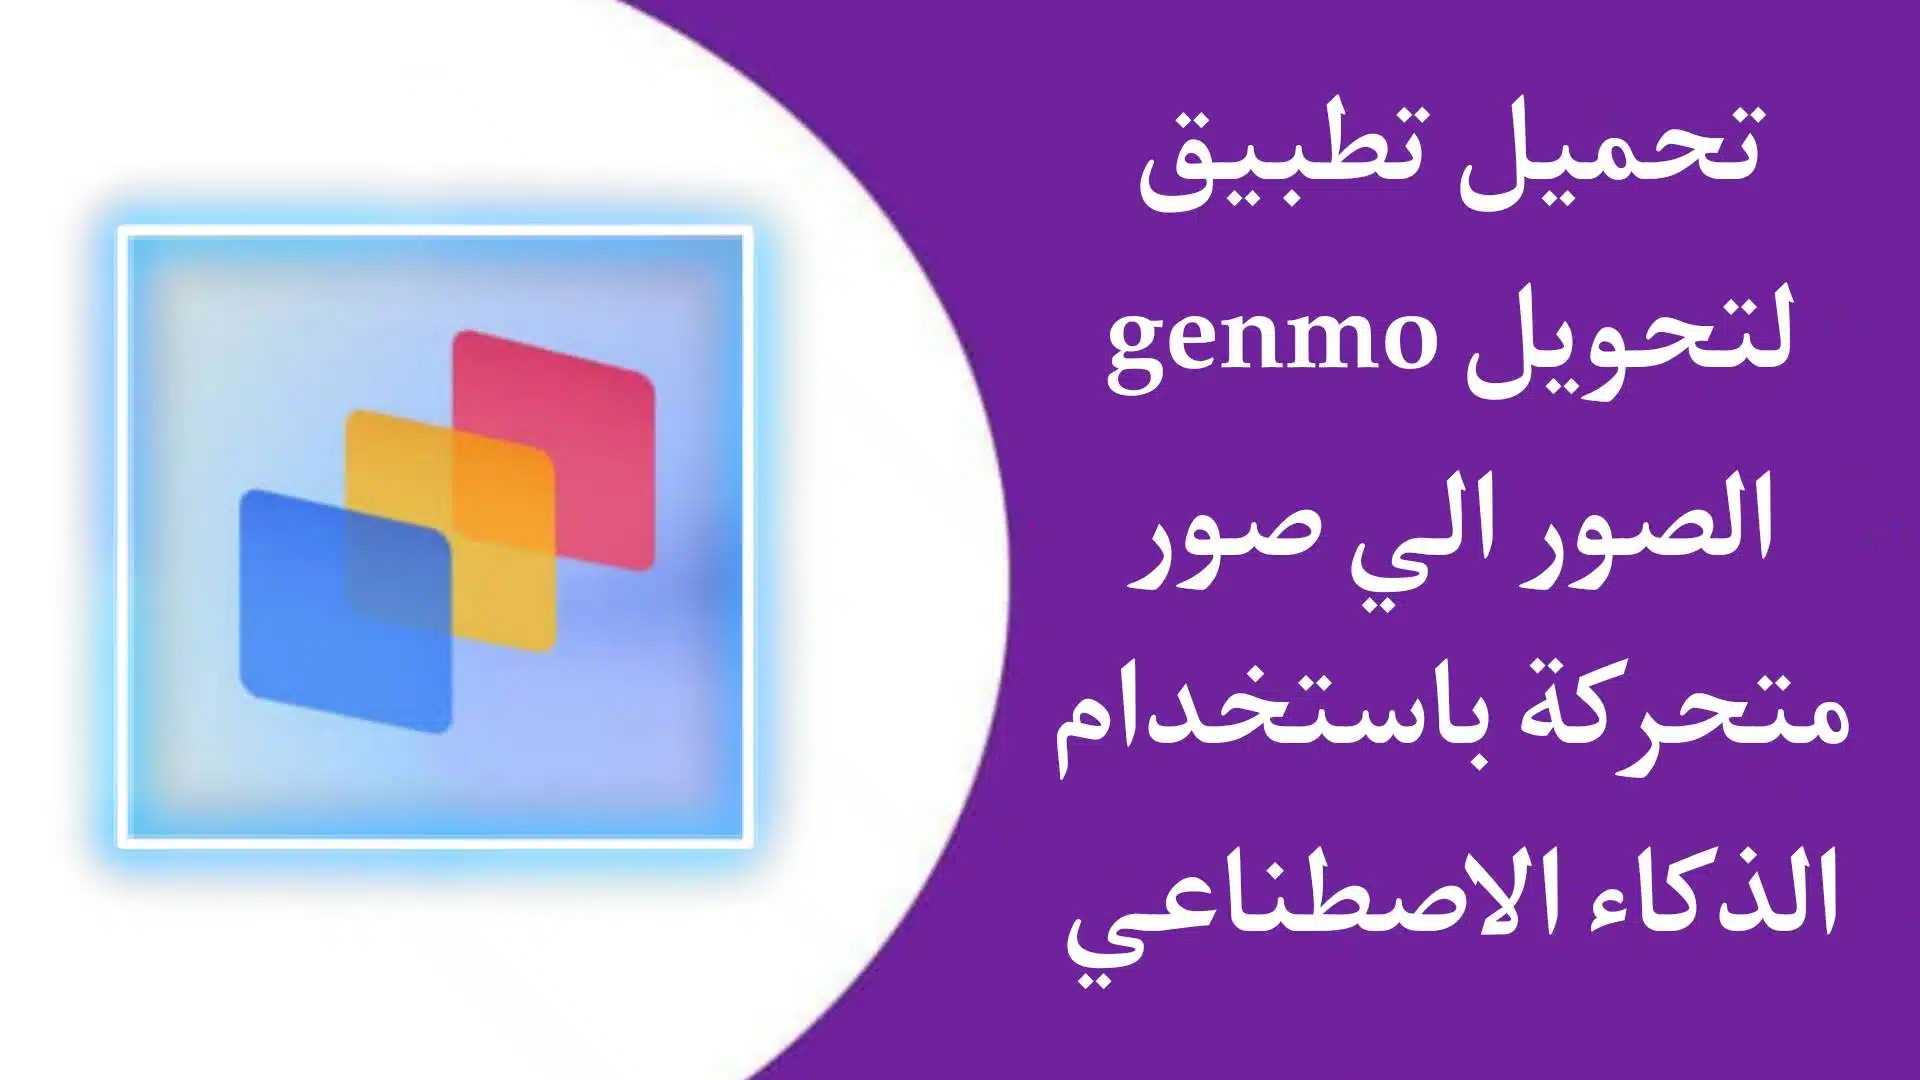 تحميل تطبيق genmo ai لانشاء مقاطع فيديو وصور متحركة باستخدام AI الذكاء الاصطناعي